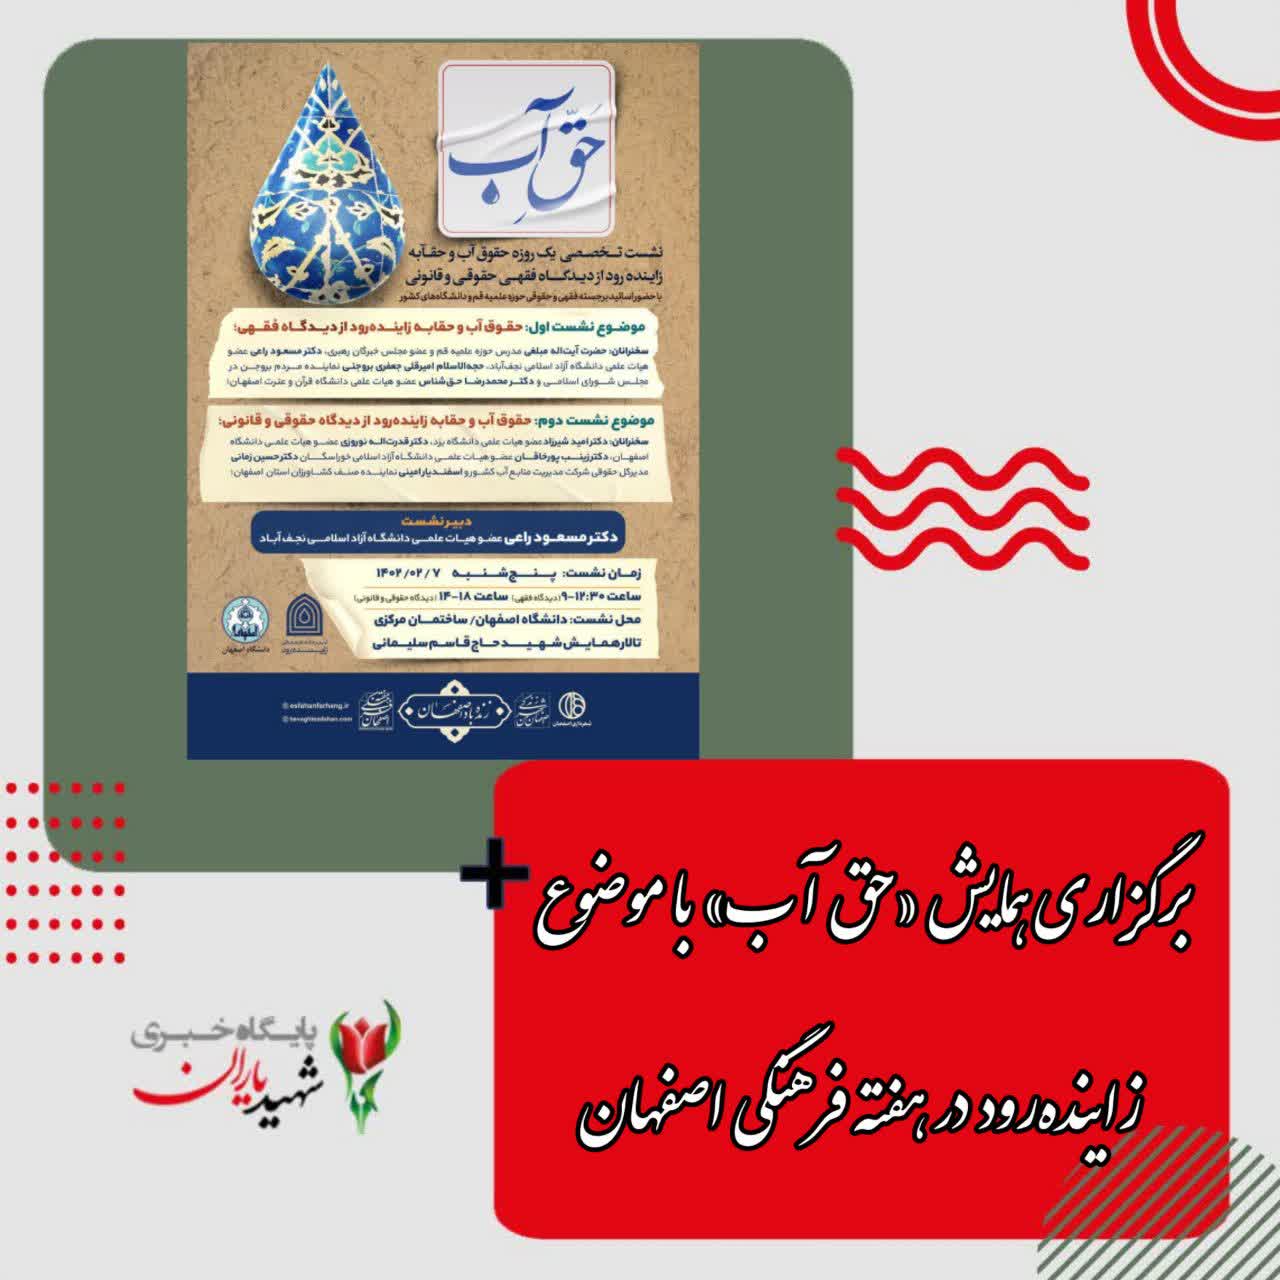 رئیس اداره توسعه فرهنگ شهروندی اصفهان خبر داد: